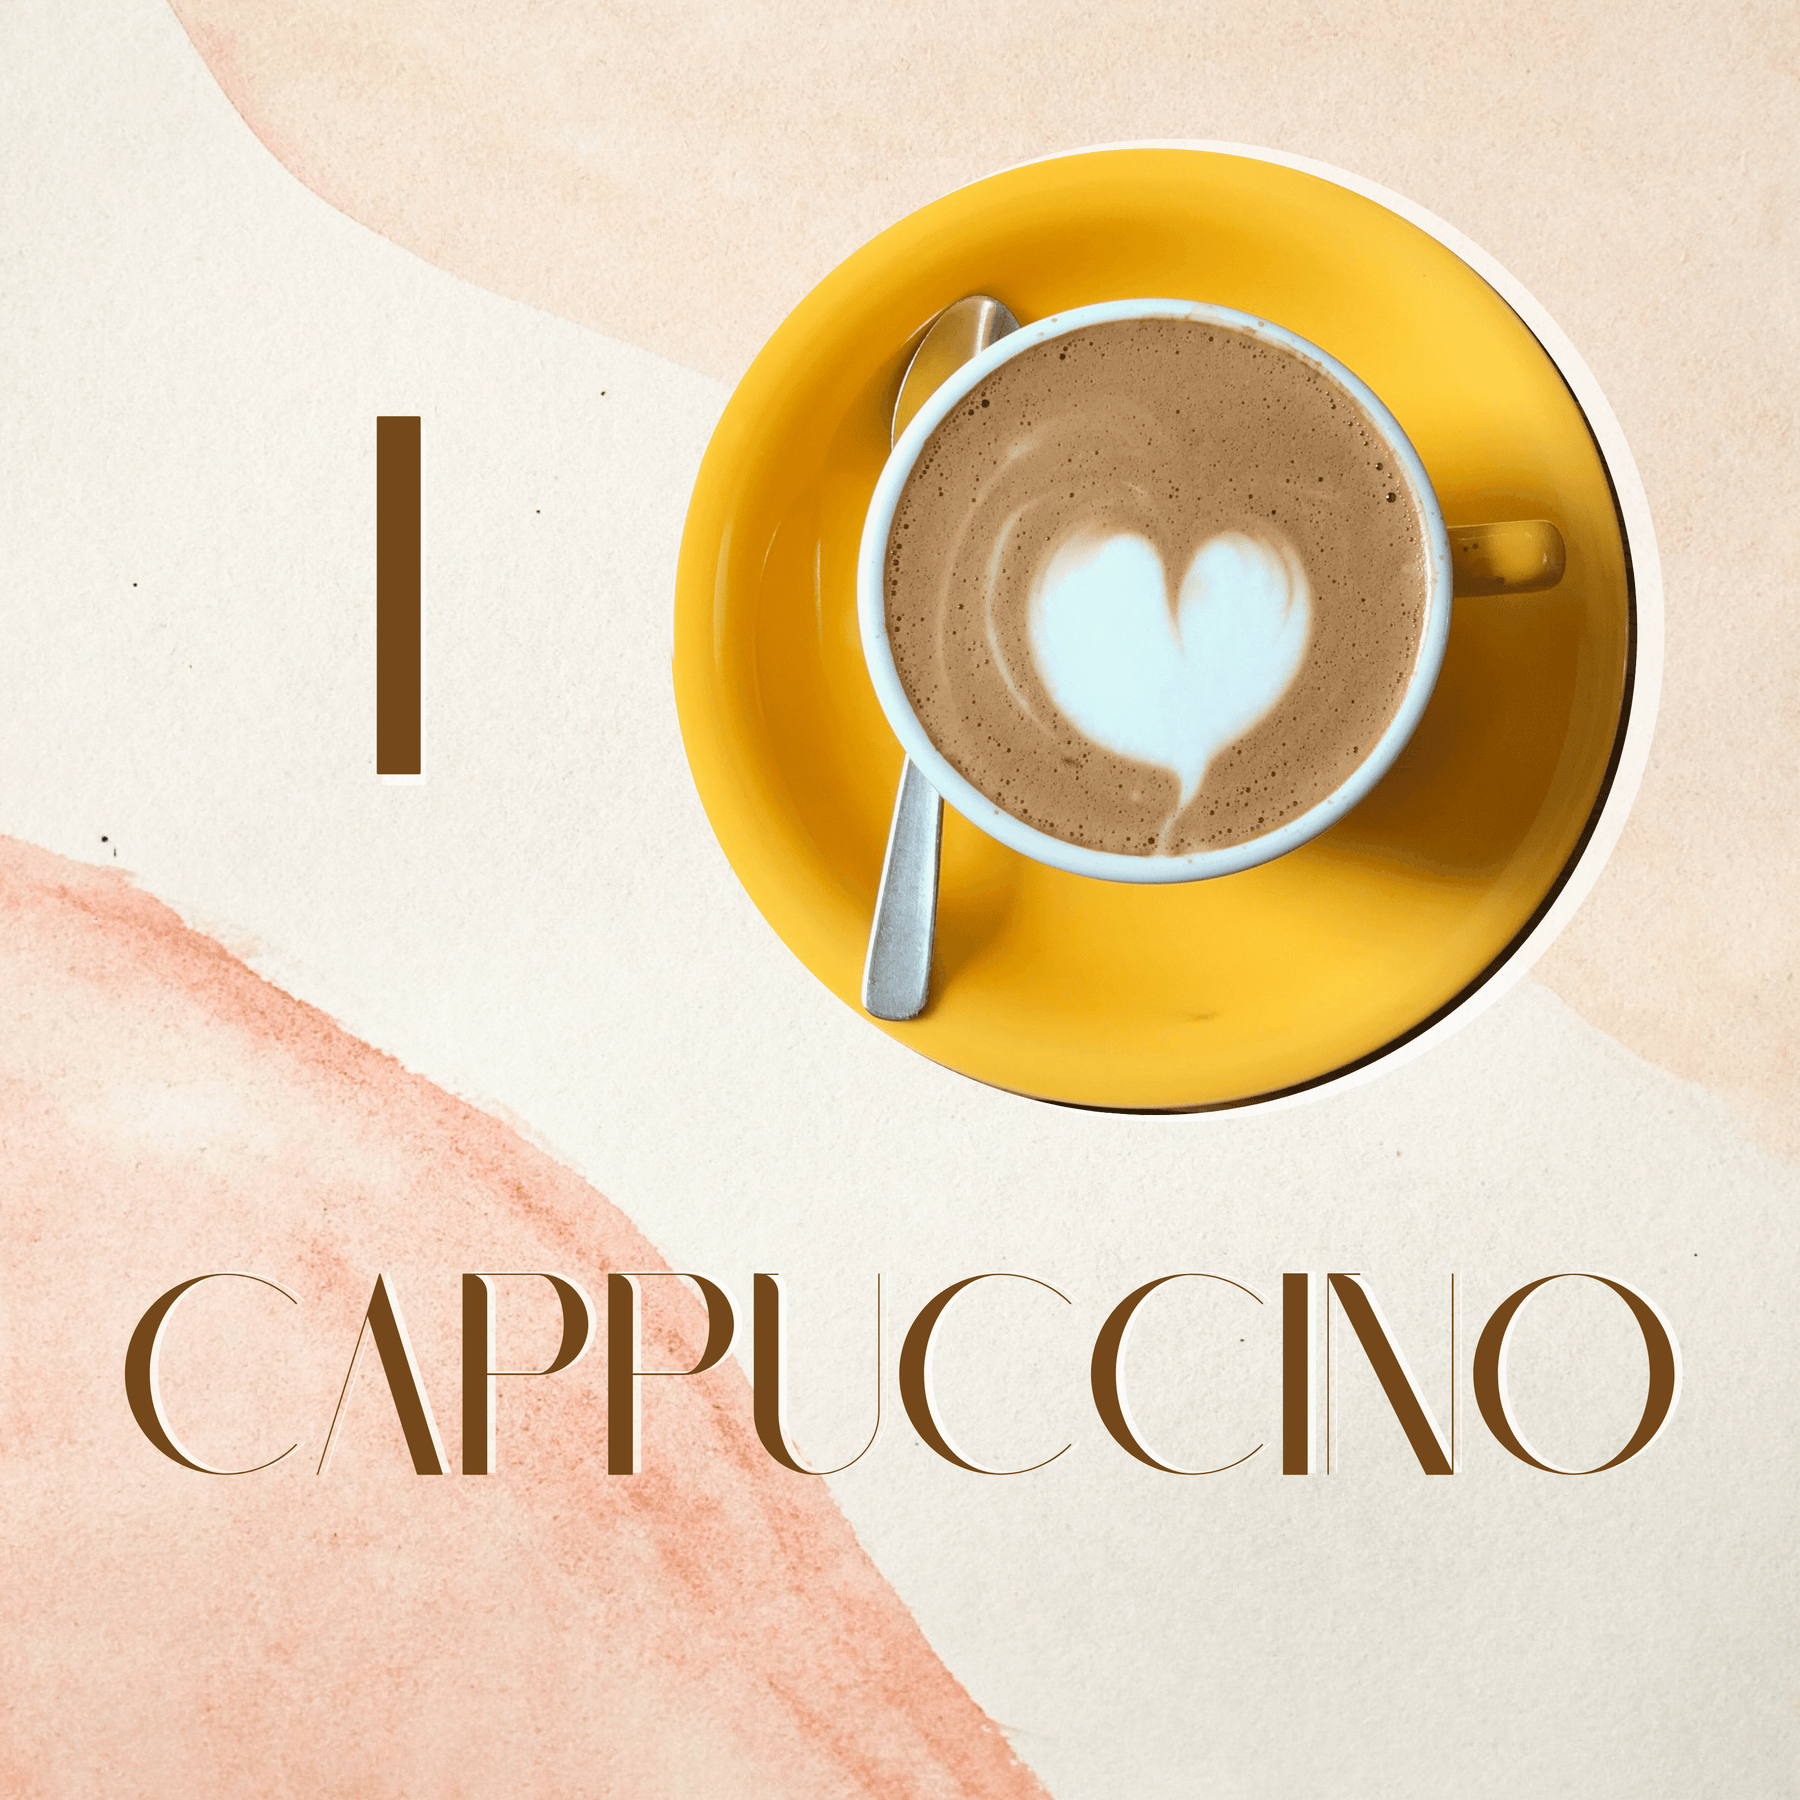 Die Kunst des Cappuccinos: Genuss in jeder Tasse